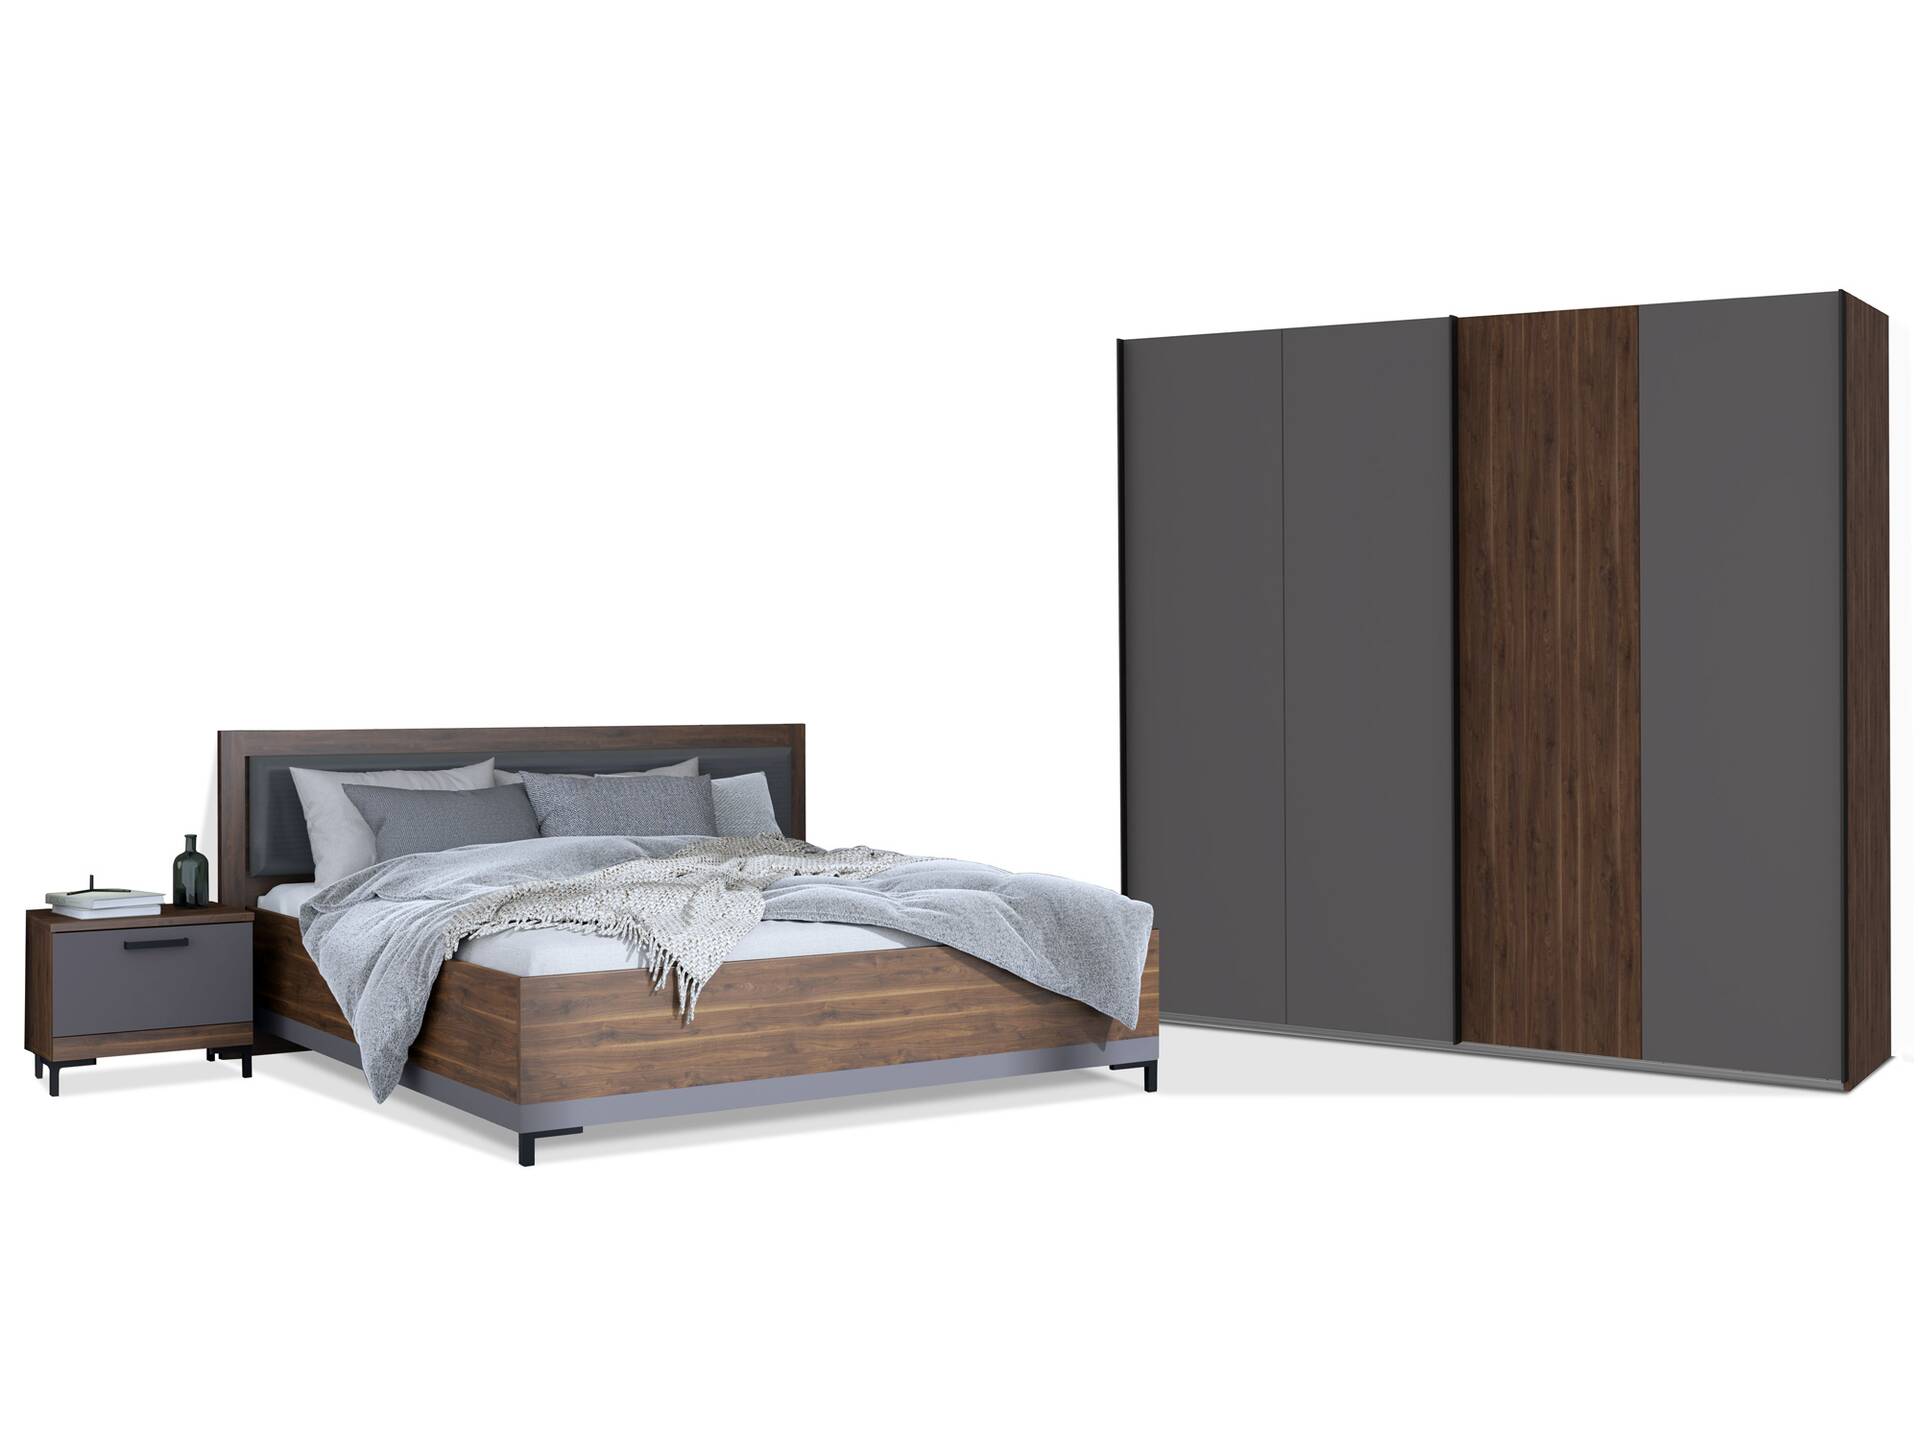 QUERRY Komplettschlafzimmer, Material Dekorspanplatte, walnussfarbig/grau 160 cm | 270 cm